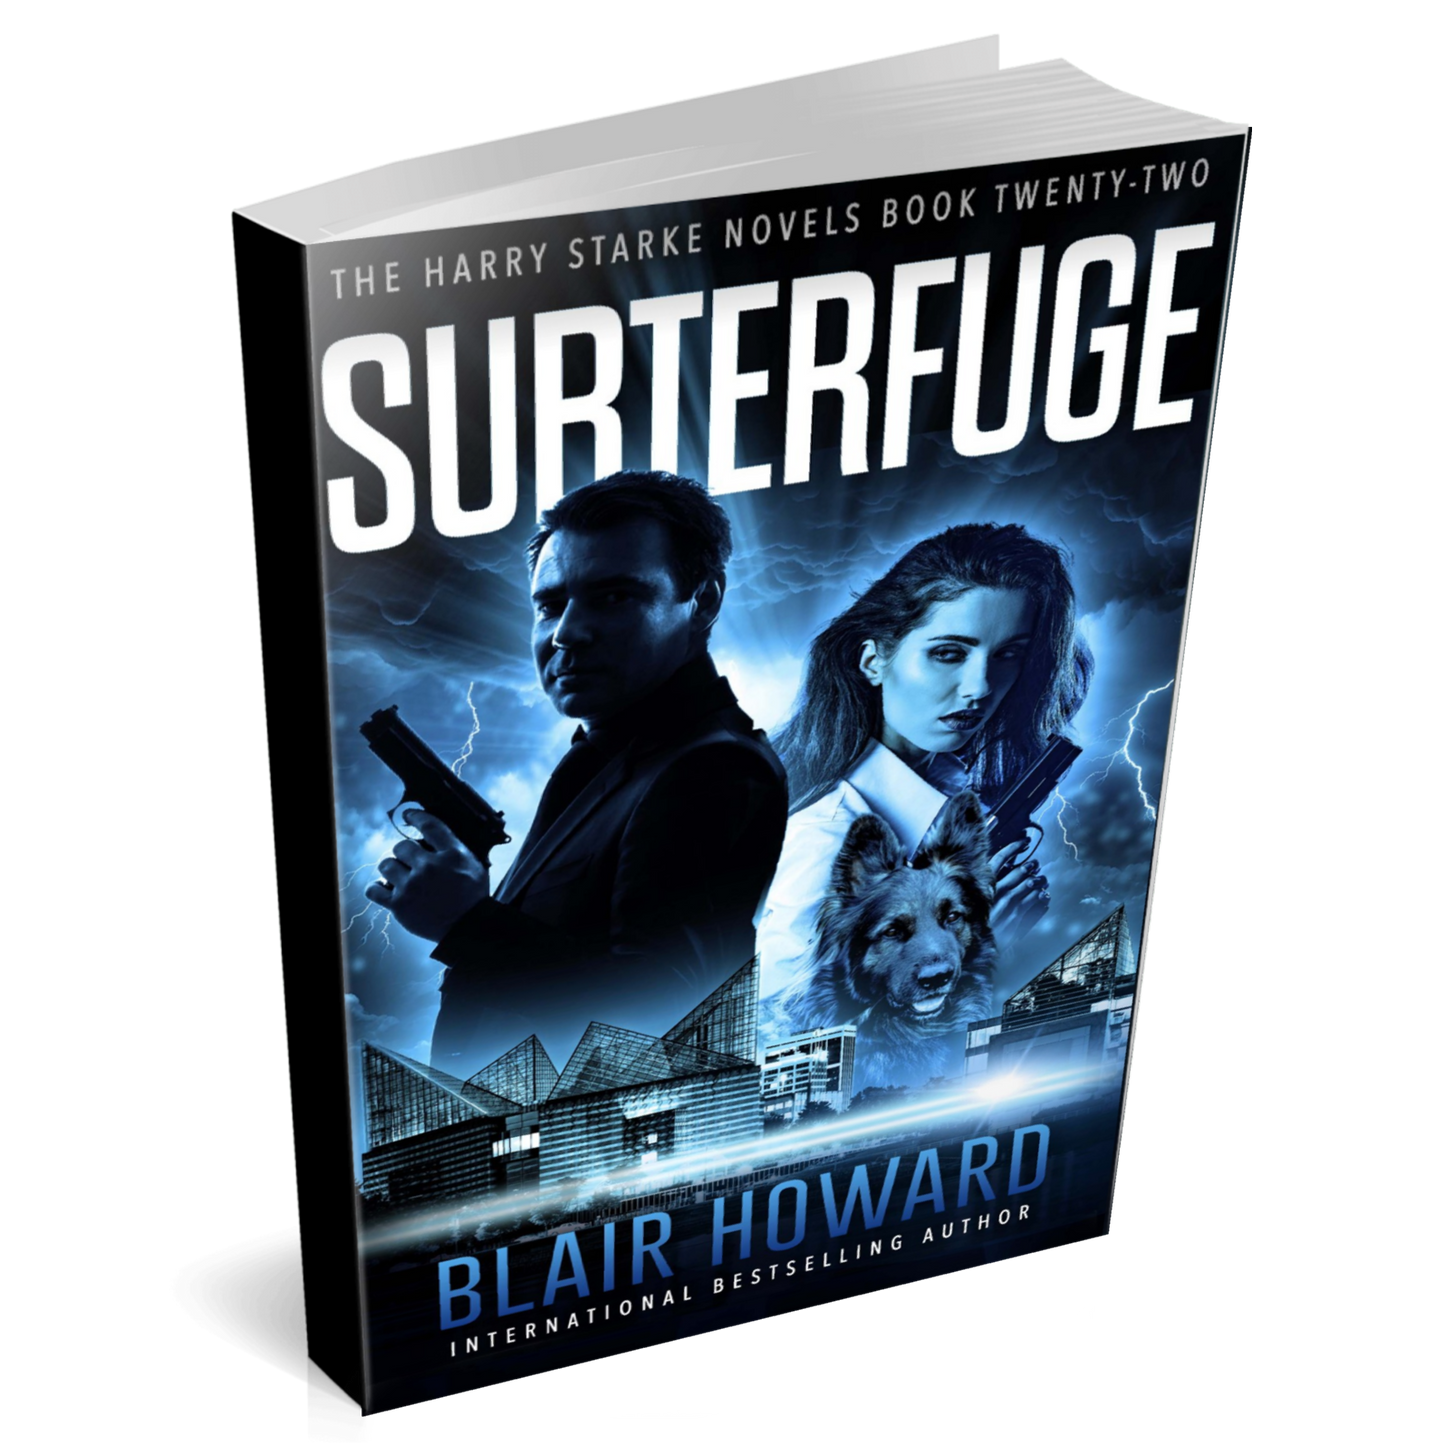 Subterfuge (The Harry Starke Novels Book 22)